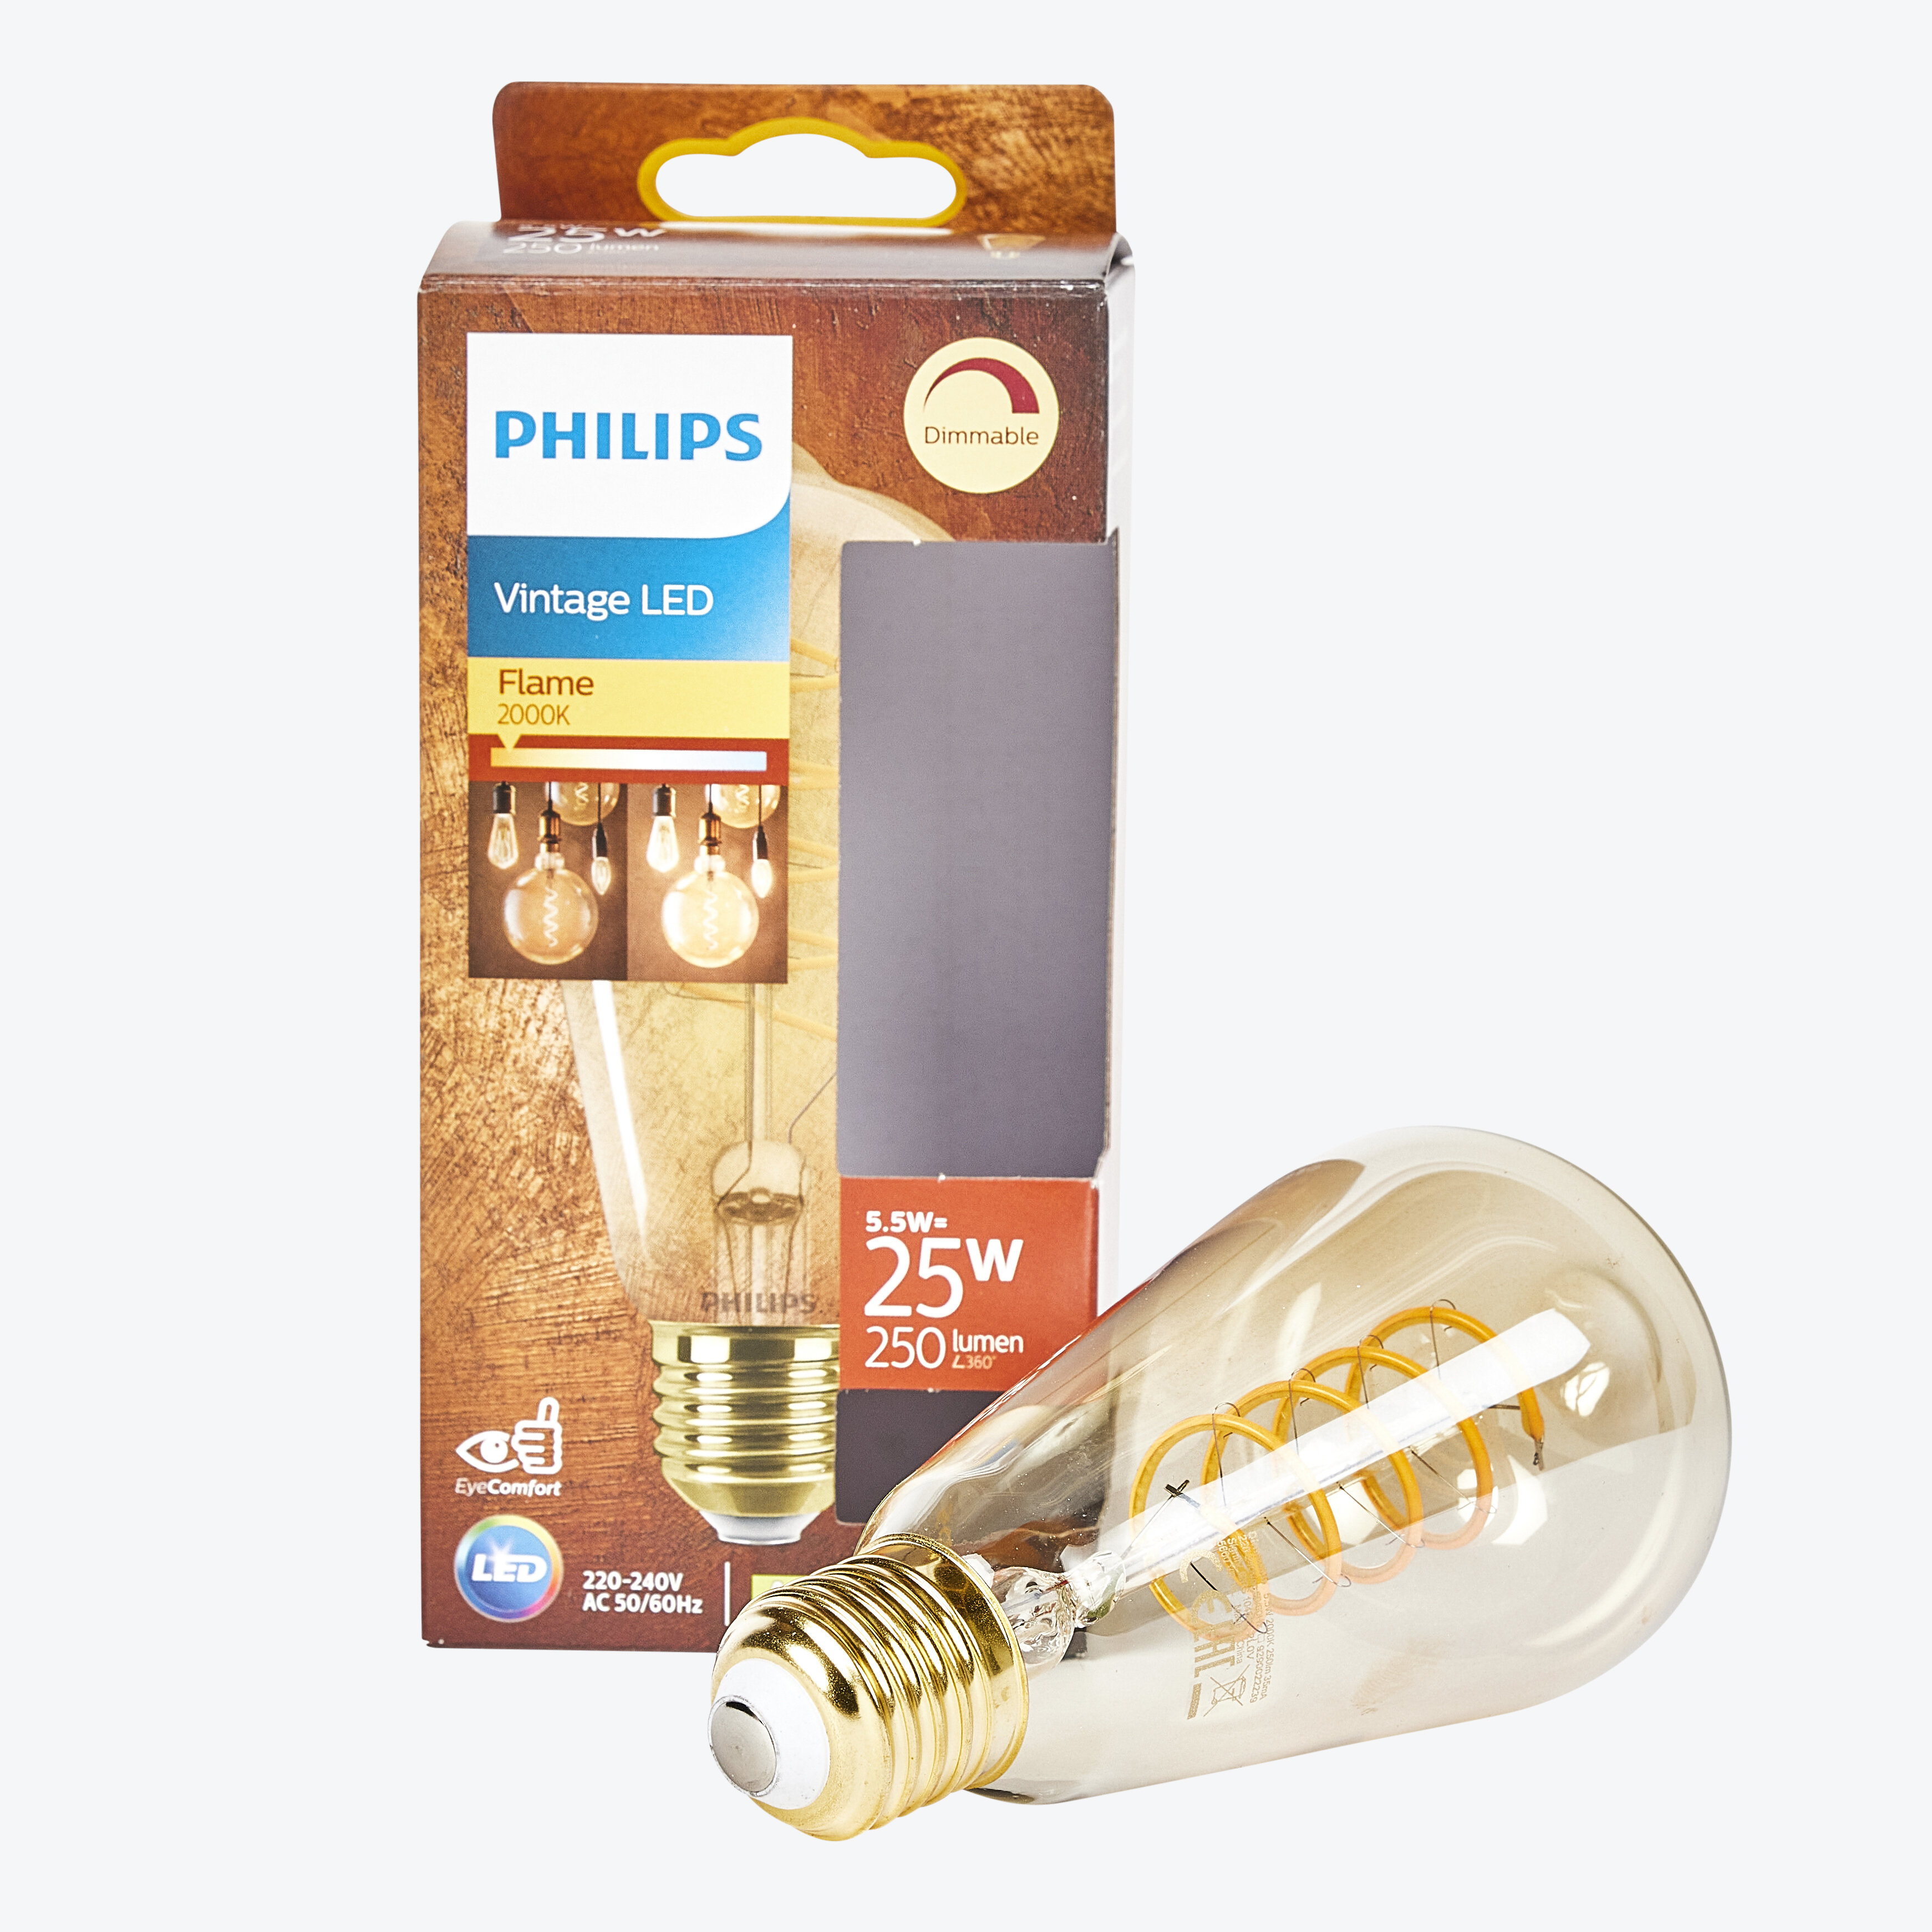 Philips LED classic 25W